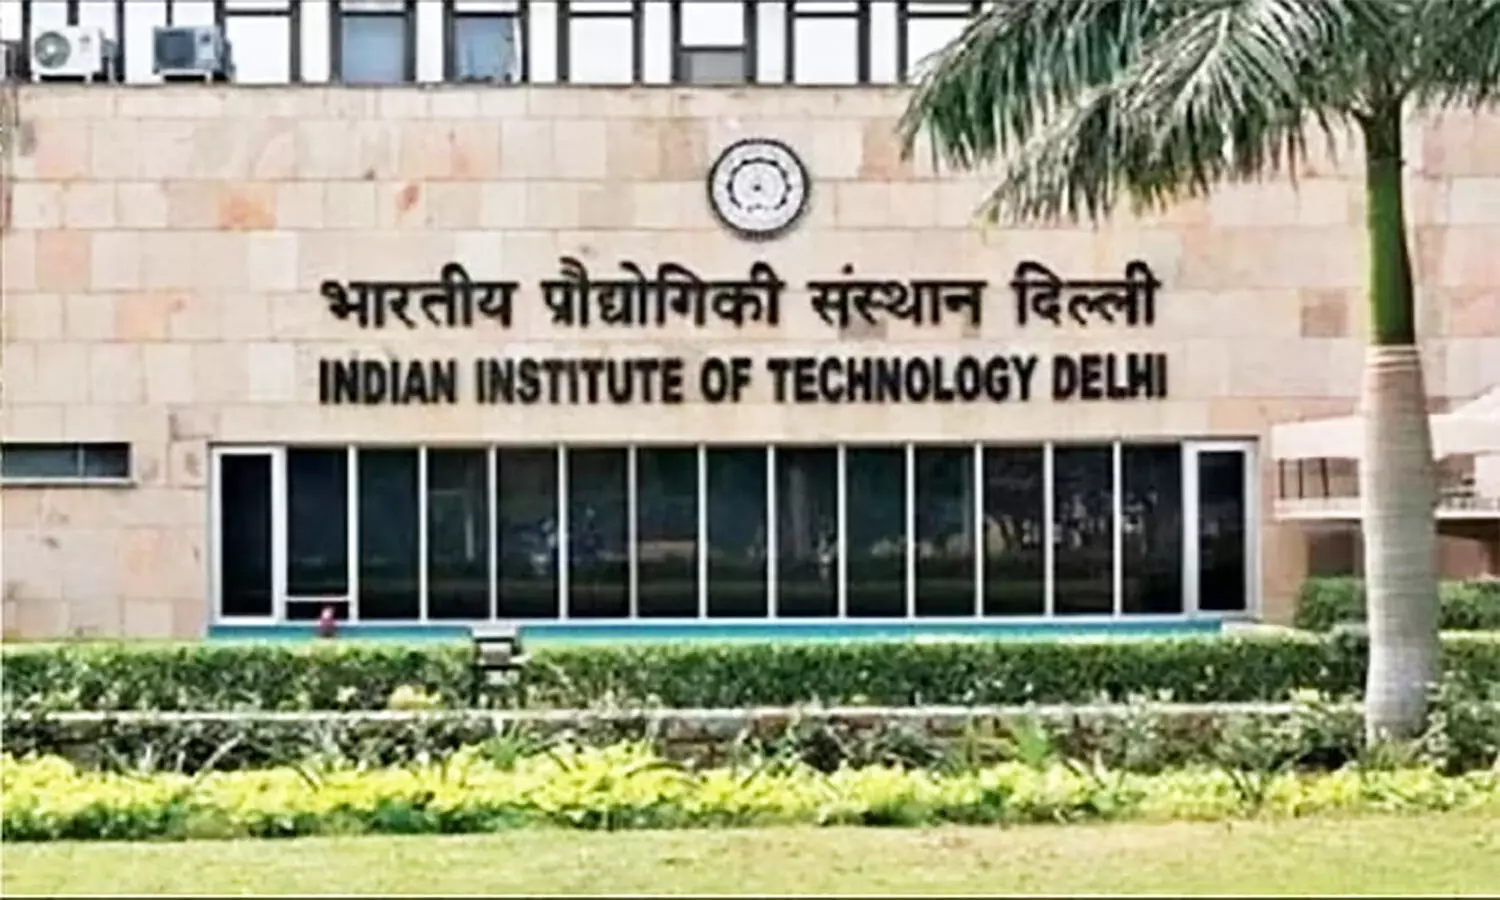 IIT Delhi अब UAE में खोलेगा कैम्पस, पीएम मोदी के दौरे पर हुआ ऐतिहासिक समझौता